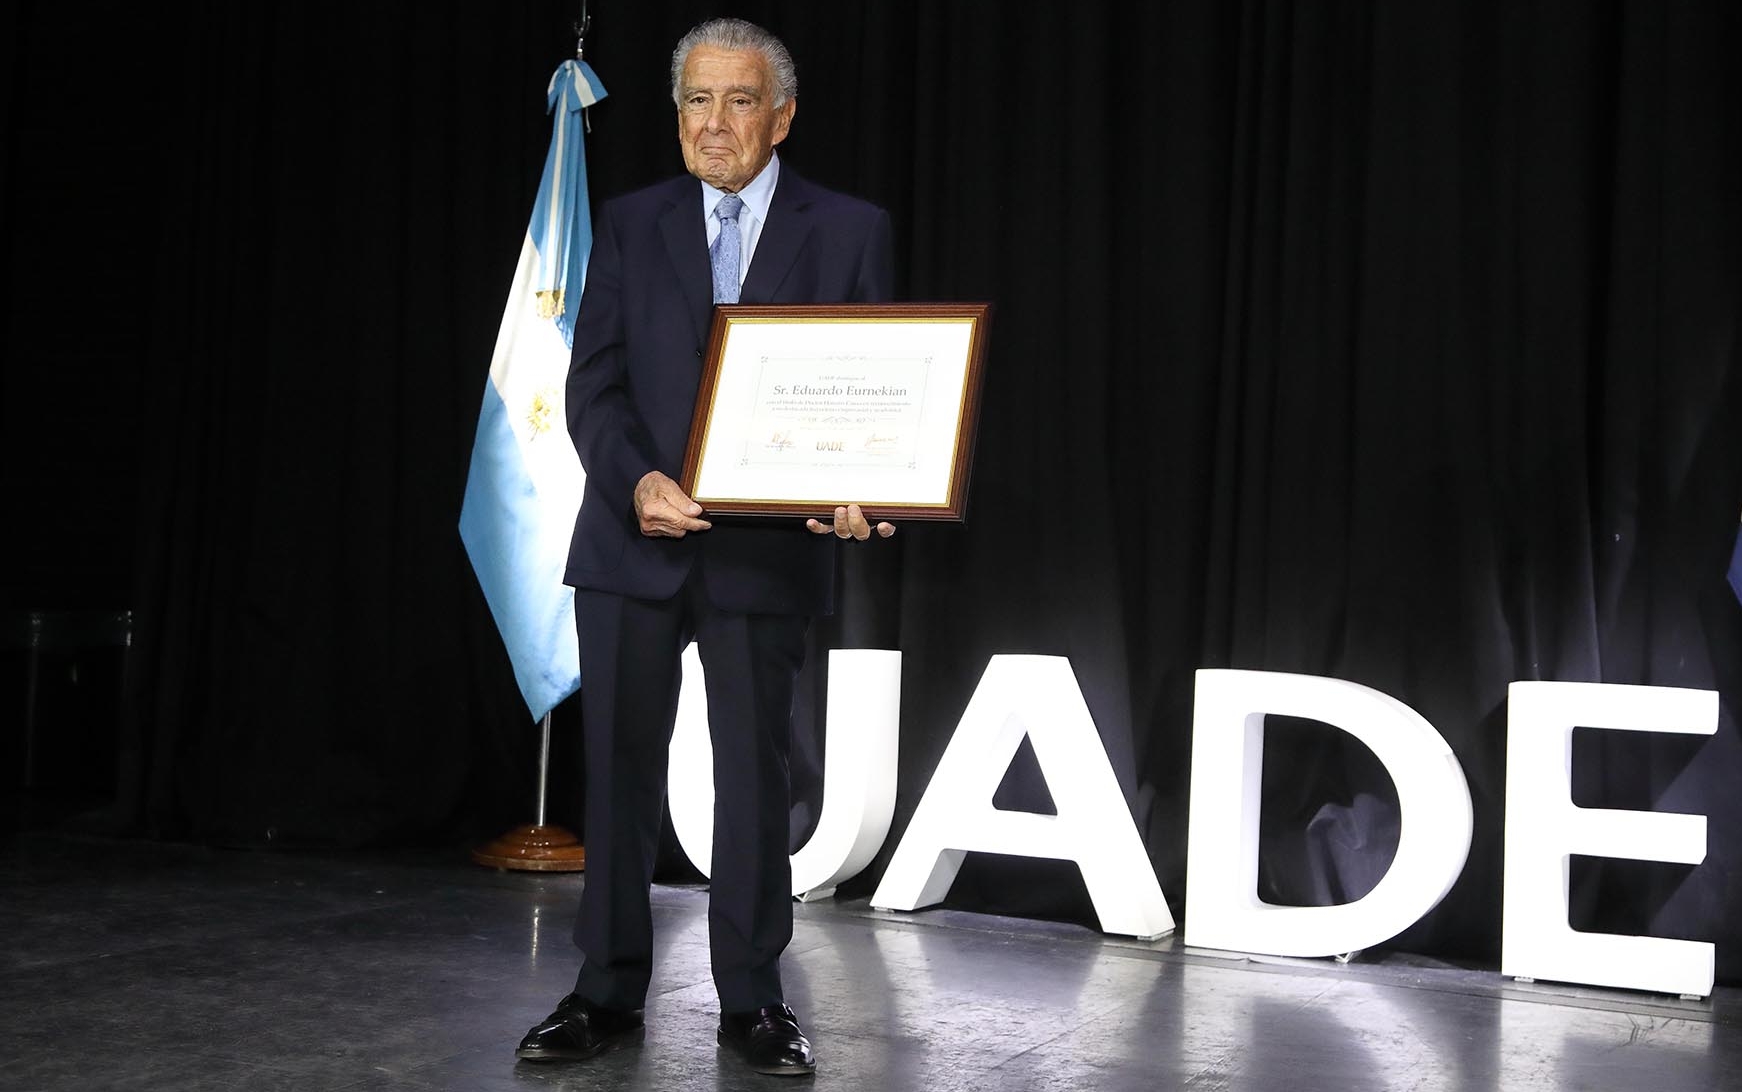 25 fotos de la ceremonia en la que Eduardo Eurnekian recibió el doctorado honoris causa de la UADE